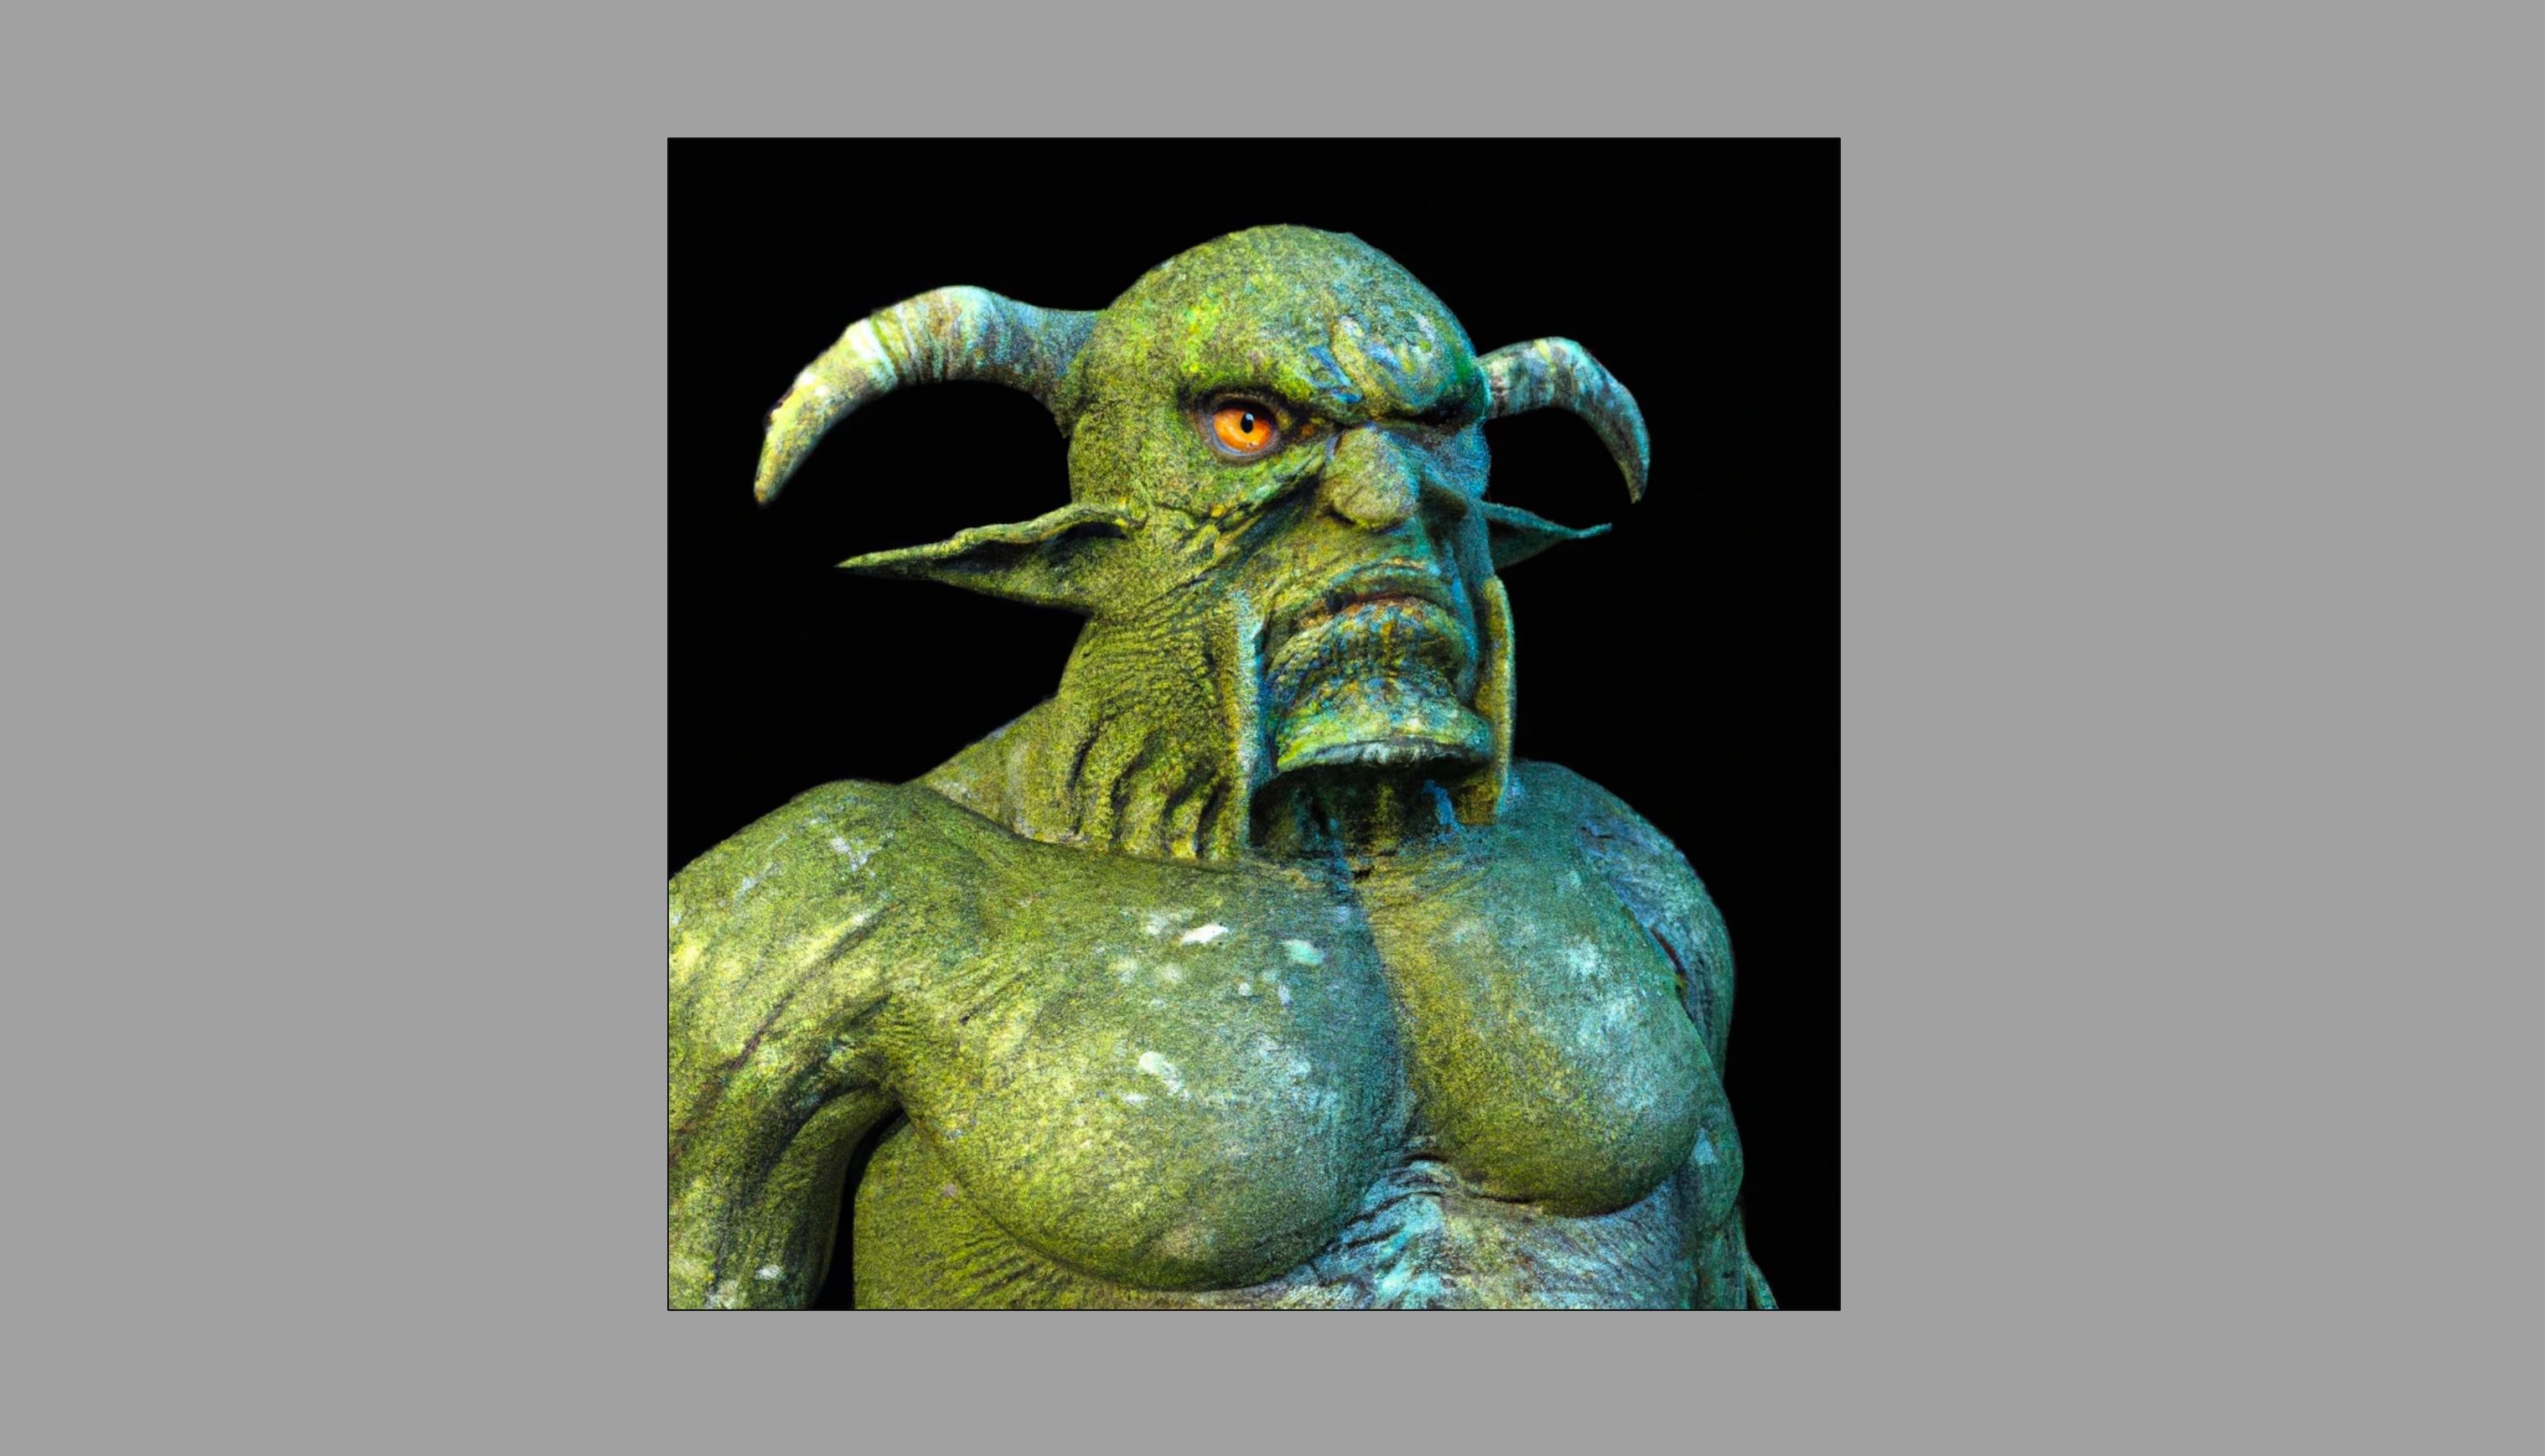 Uma imagem gerada por IA de um ogro verde com pele texturizada criada usando Dall-E